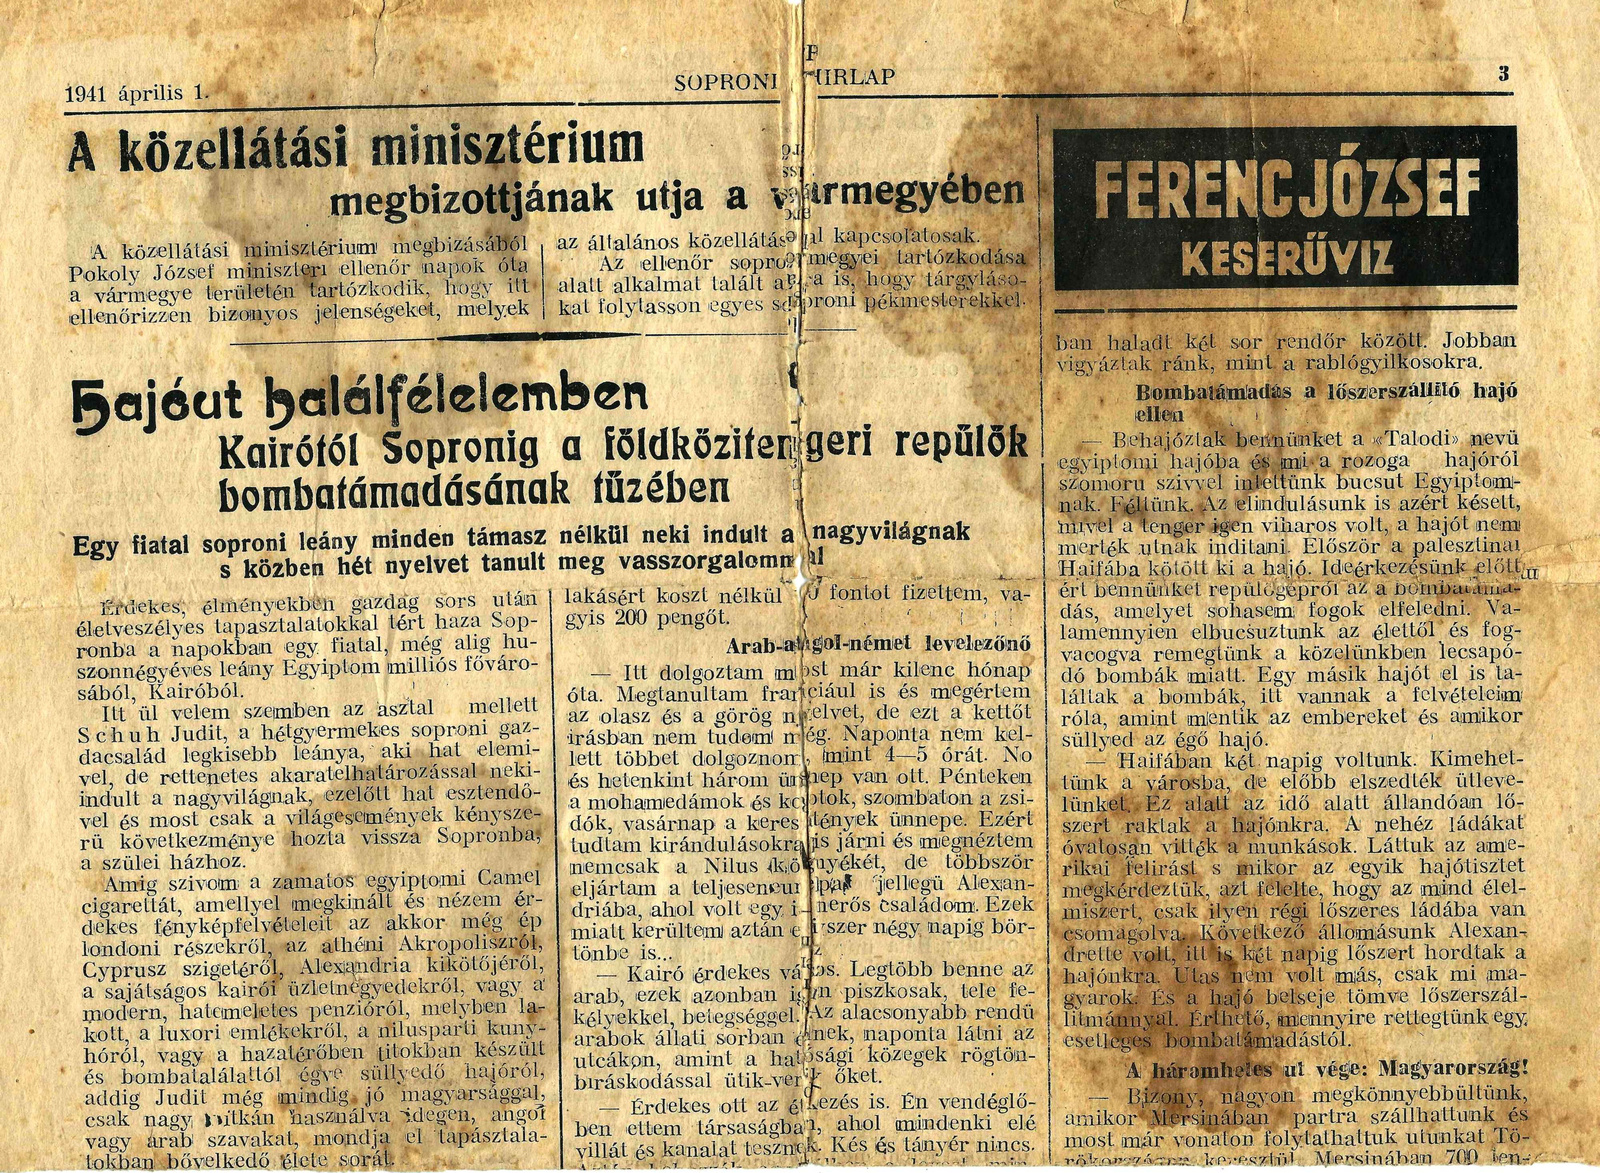 Schuh Judit 1941. Újságcikk 1.